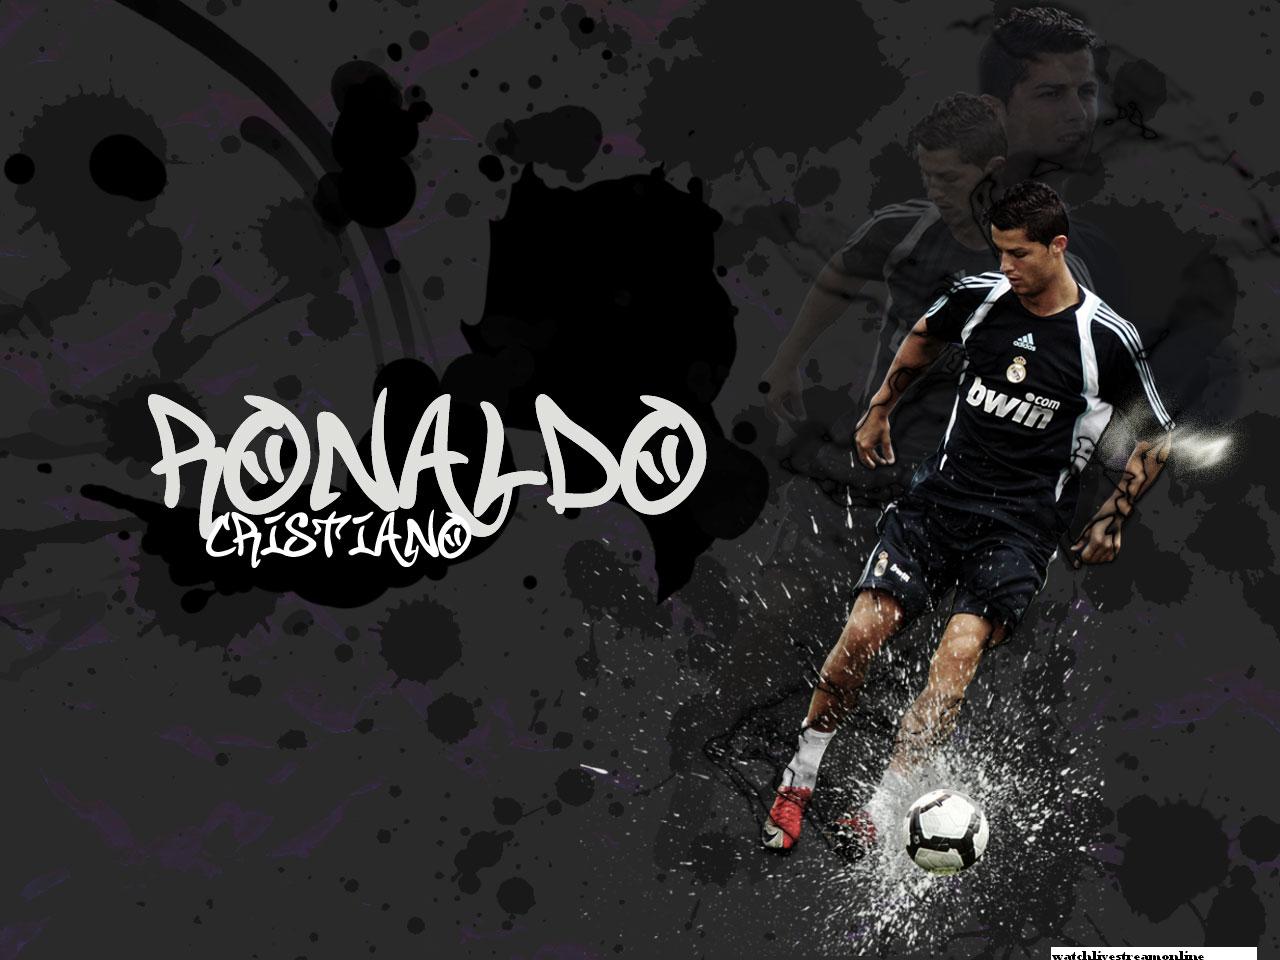 http://4.bp.blogspot.com/-iacrRGm7ISo/UDslUzGT_EI/AAAAAAAAAmg/HNkktcJsiic/s1600/Cristiano-Ronaldo.jpg